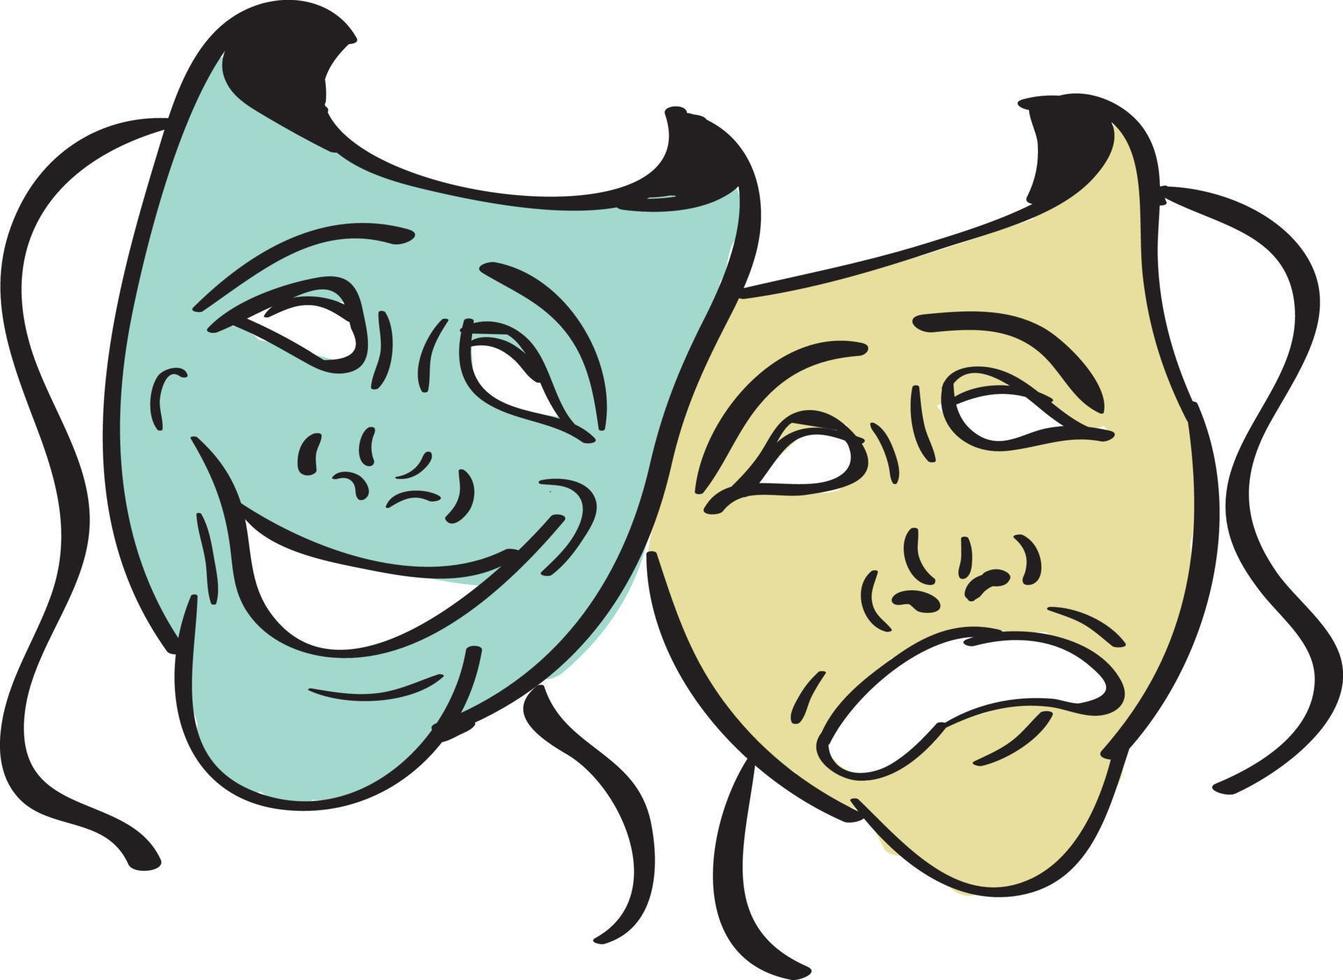 máscaras de teatro, ilustración, vector sobre fondo blanco.